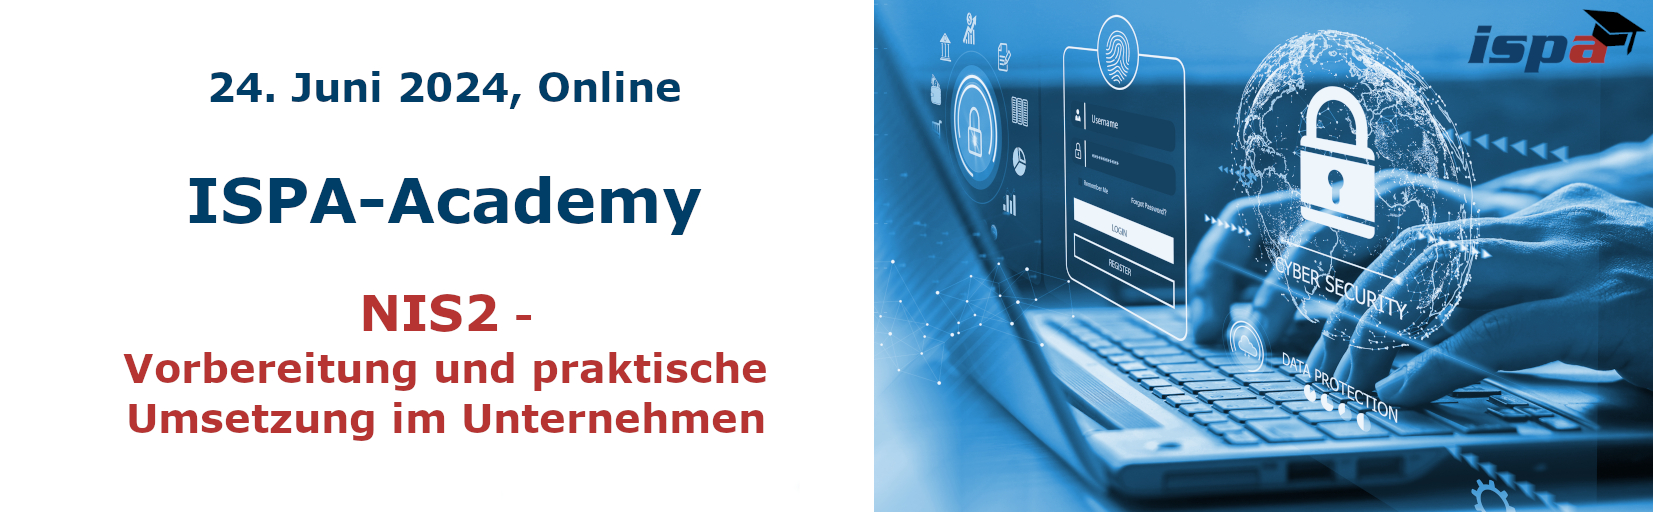 24. Juni 2024, online: ISPA-Academy: NIS2 - Vorbereitung und praktische Umsetzung im Unternehmen